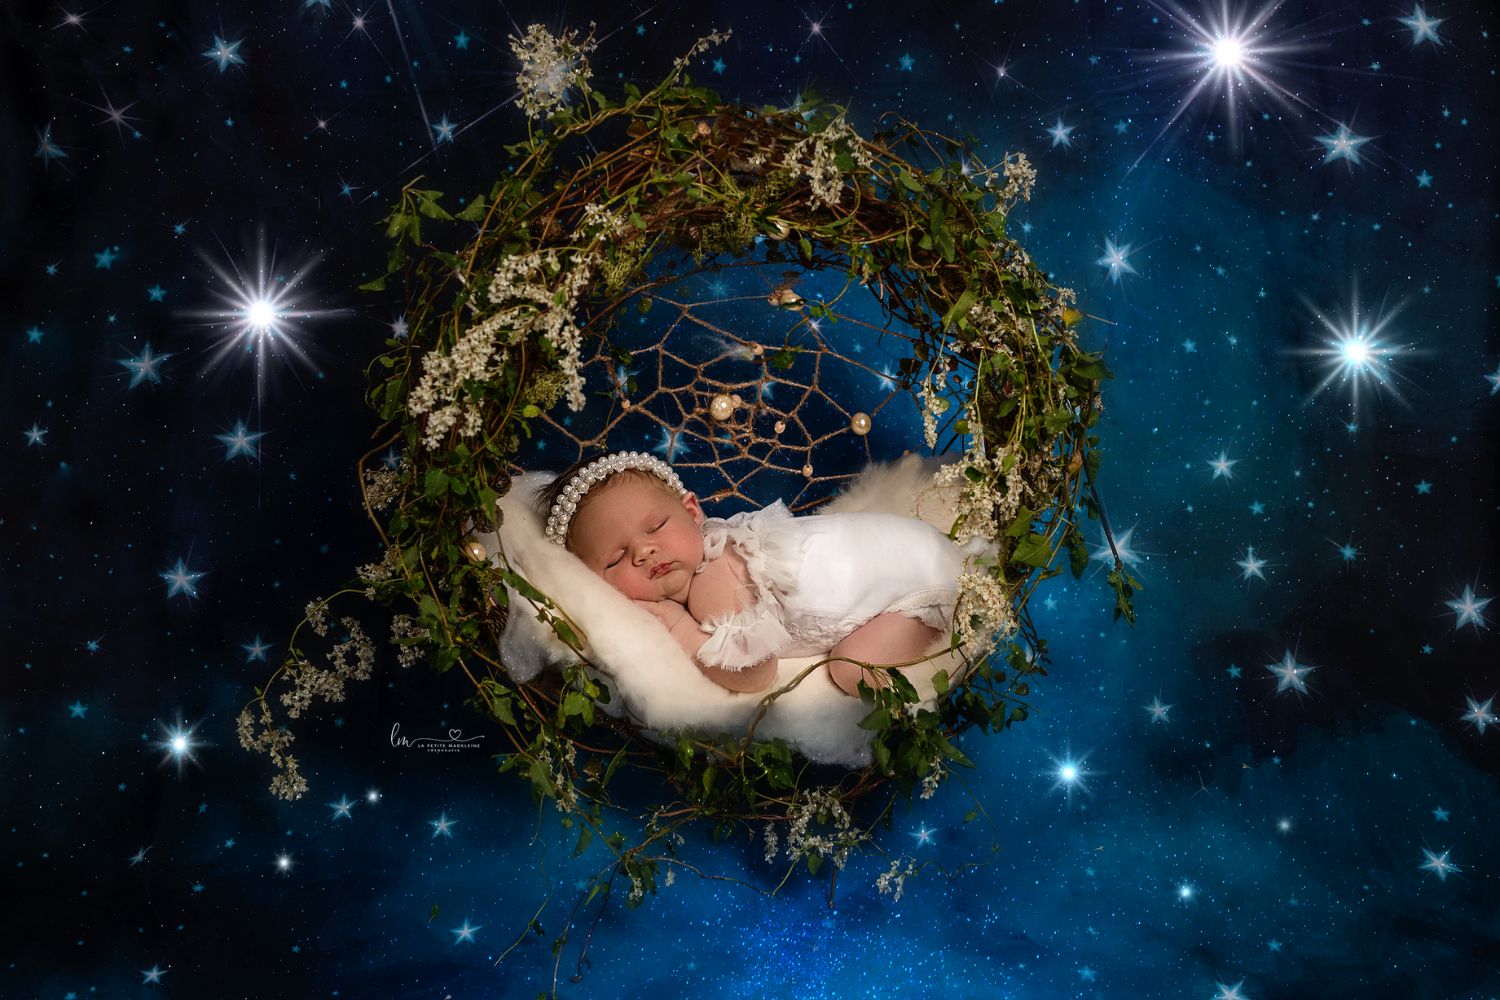 little baby lying on Christmas wreath